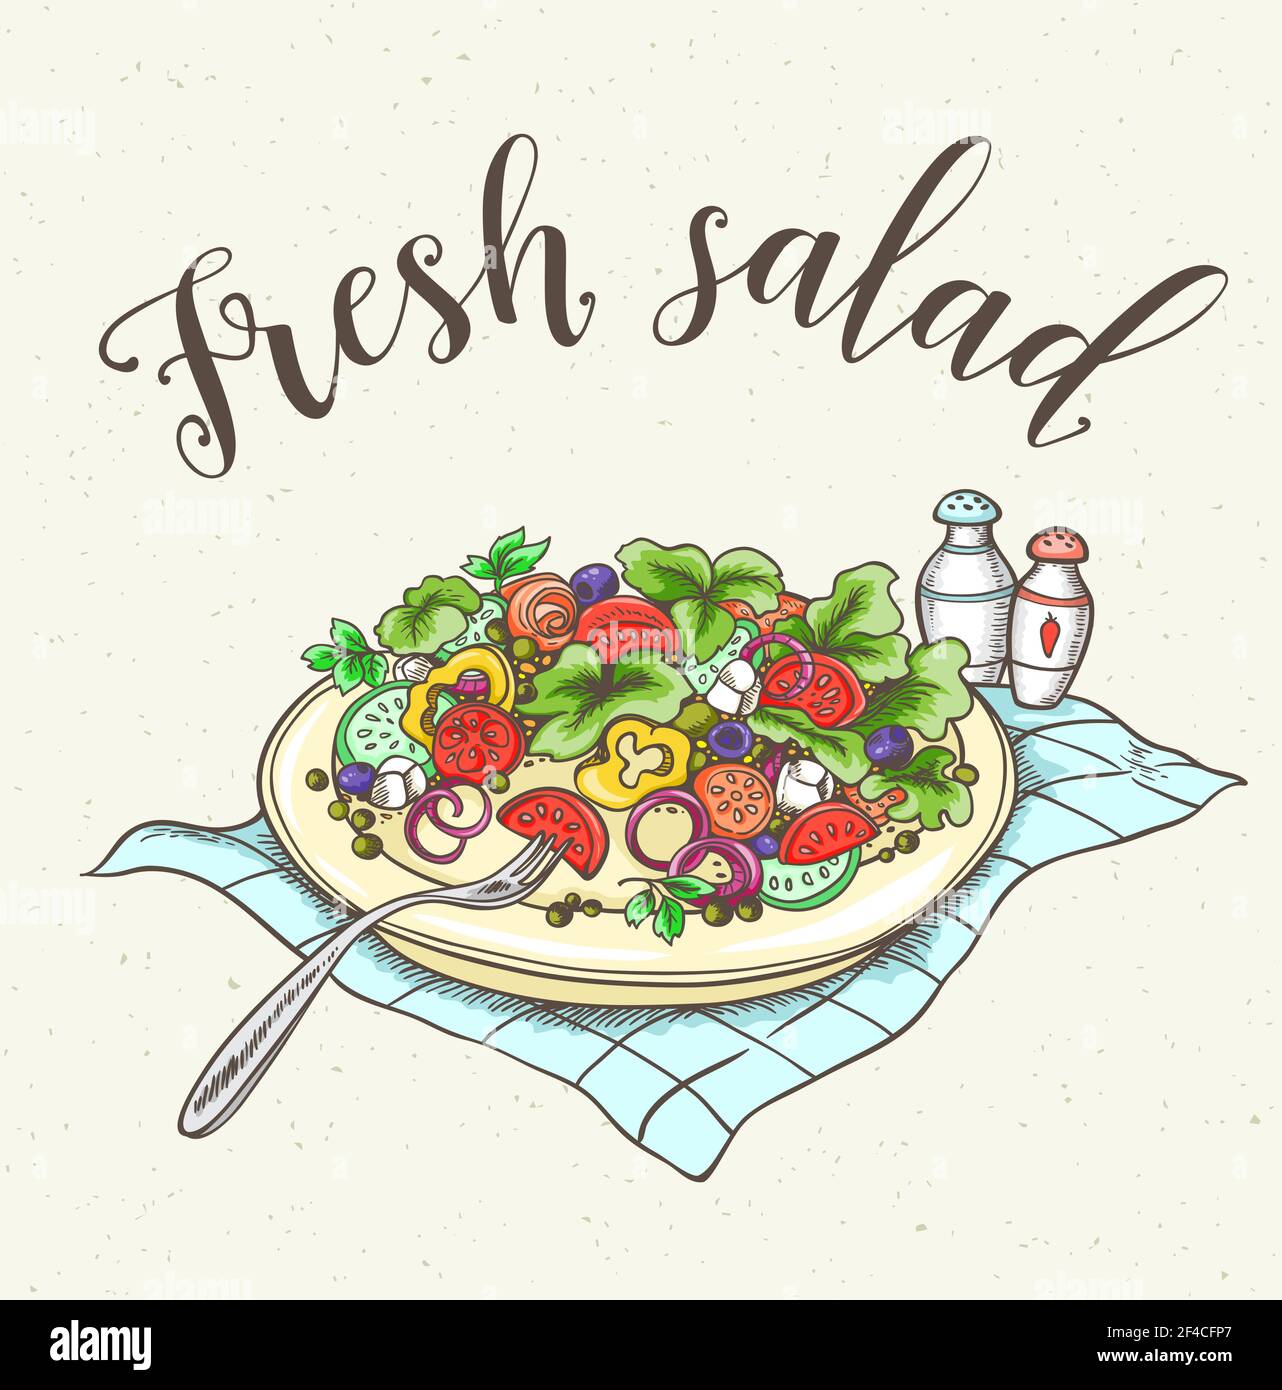 Fond vintage avec salade de légumes frais sur une assiette. Illustration vectorielle dessinée à la main. Salade de légumes frais sur une assiette Illustration de Vecteur